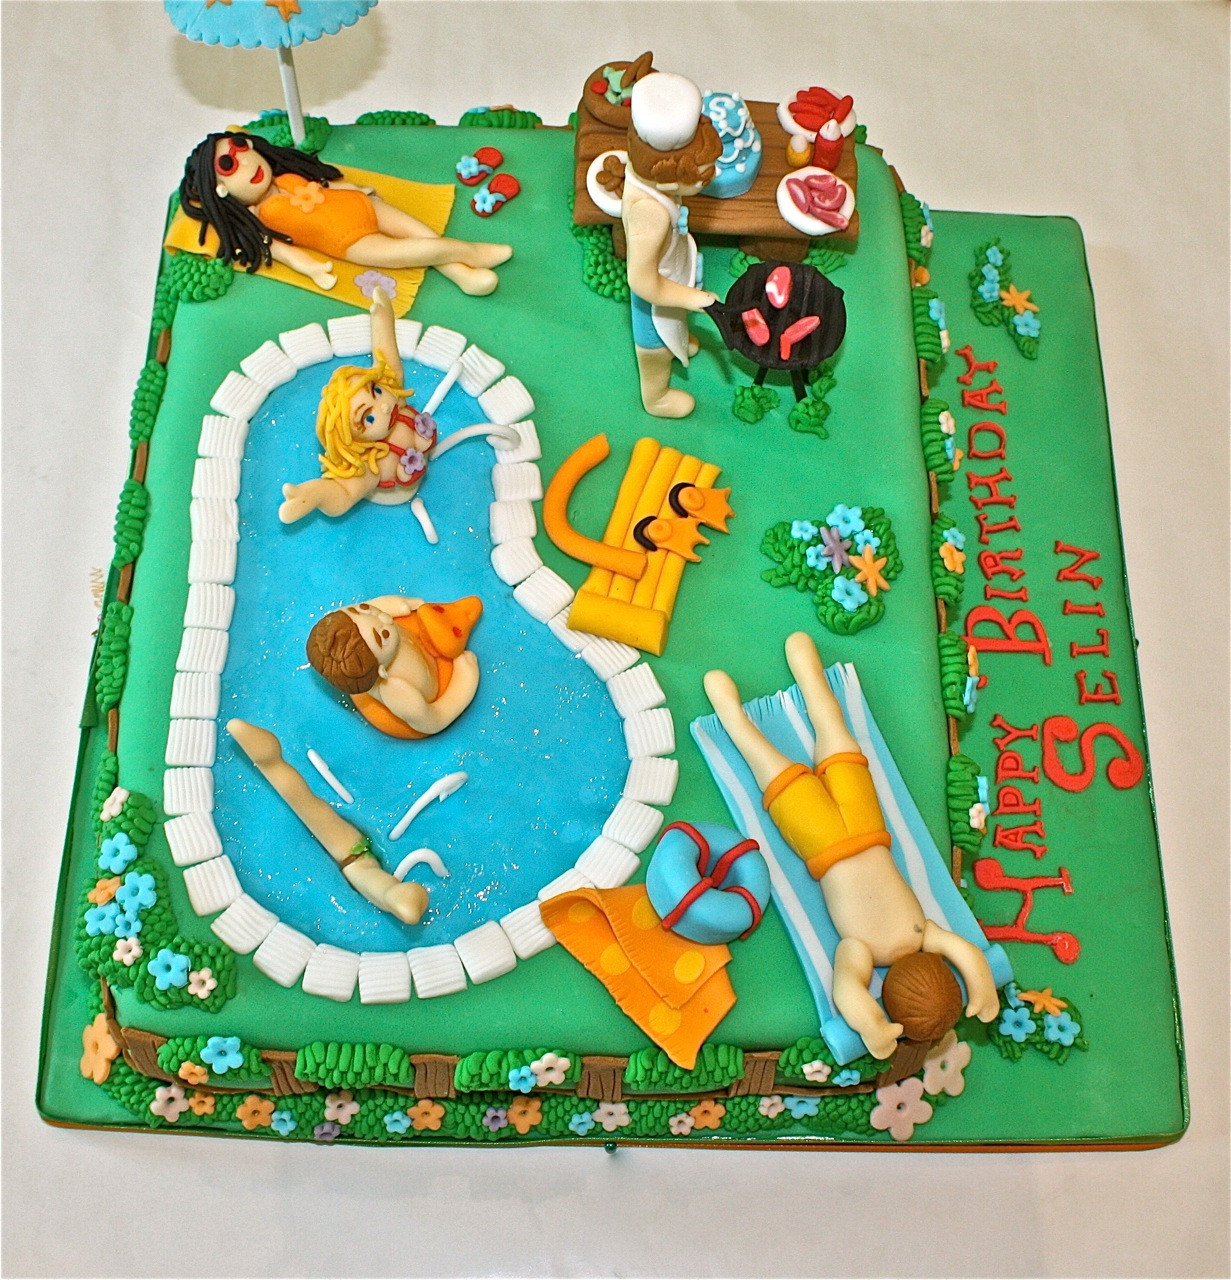 Pool Party Birthday Cakes
 POOL PARTY BIRTHDAY CAKE